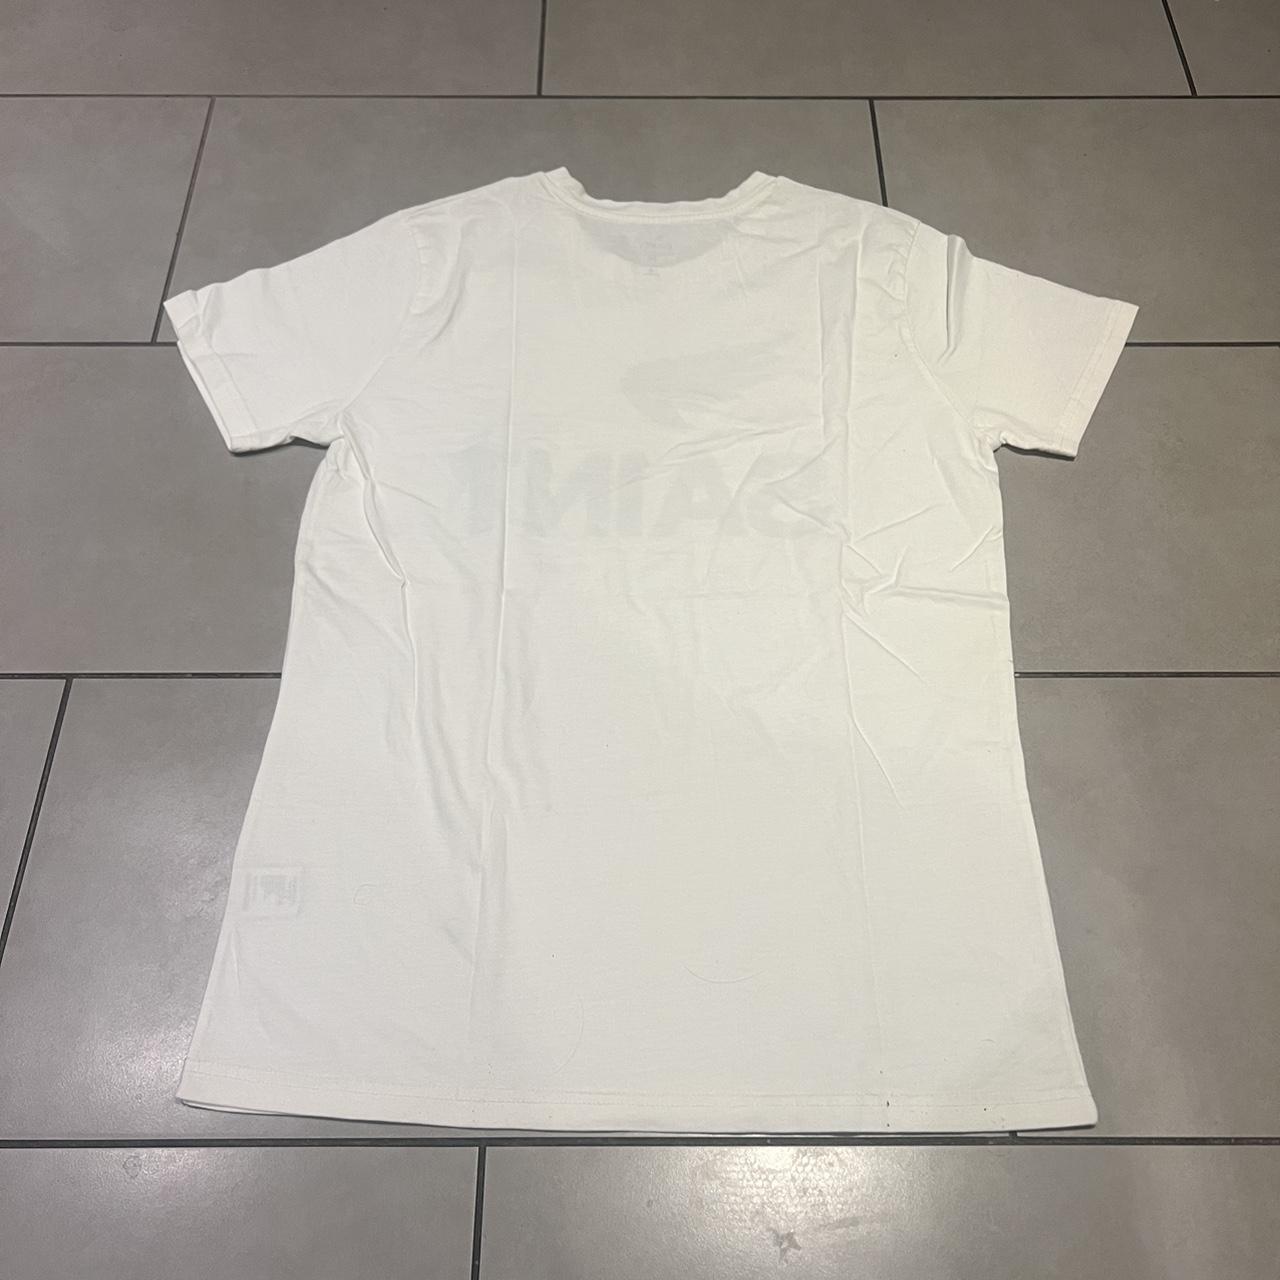 Saint white T shirt. Size M. Can fit a L. - Depop